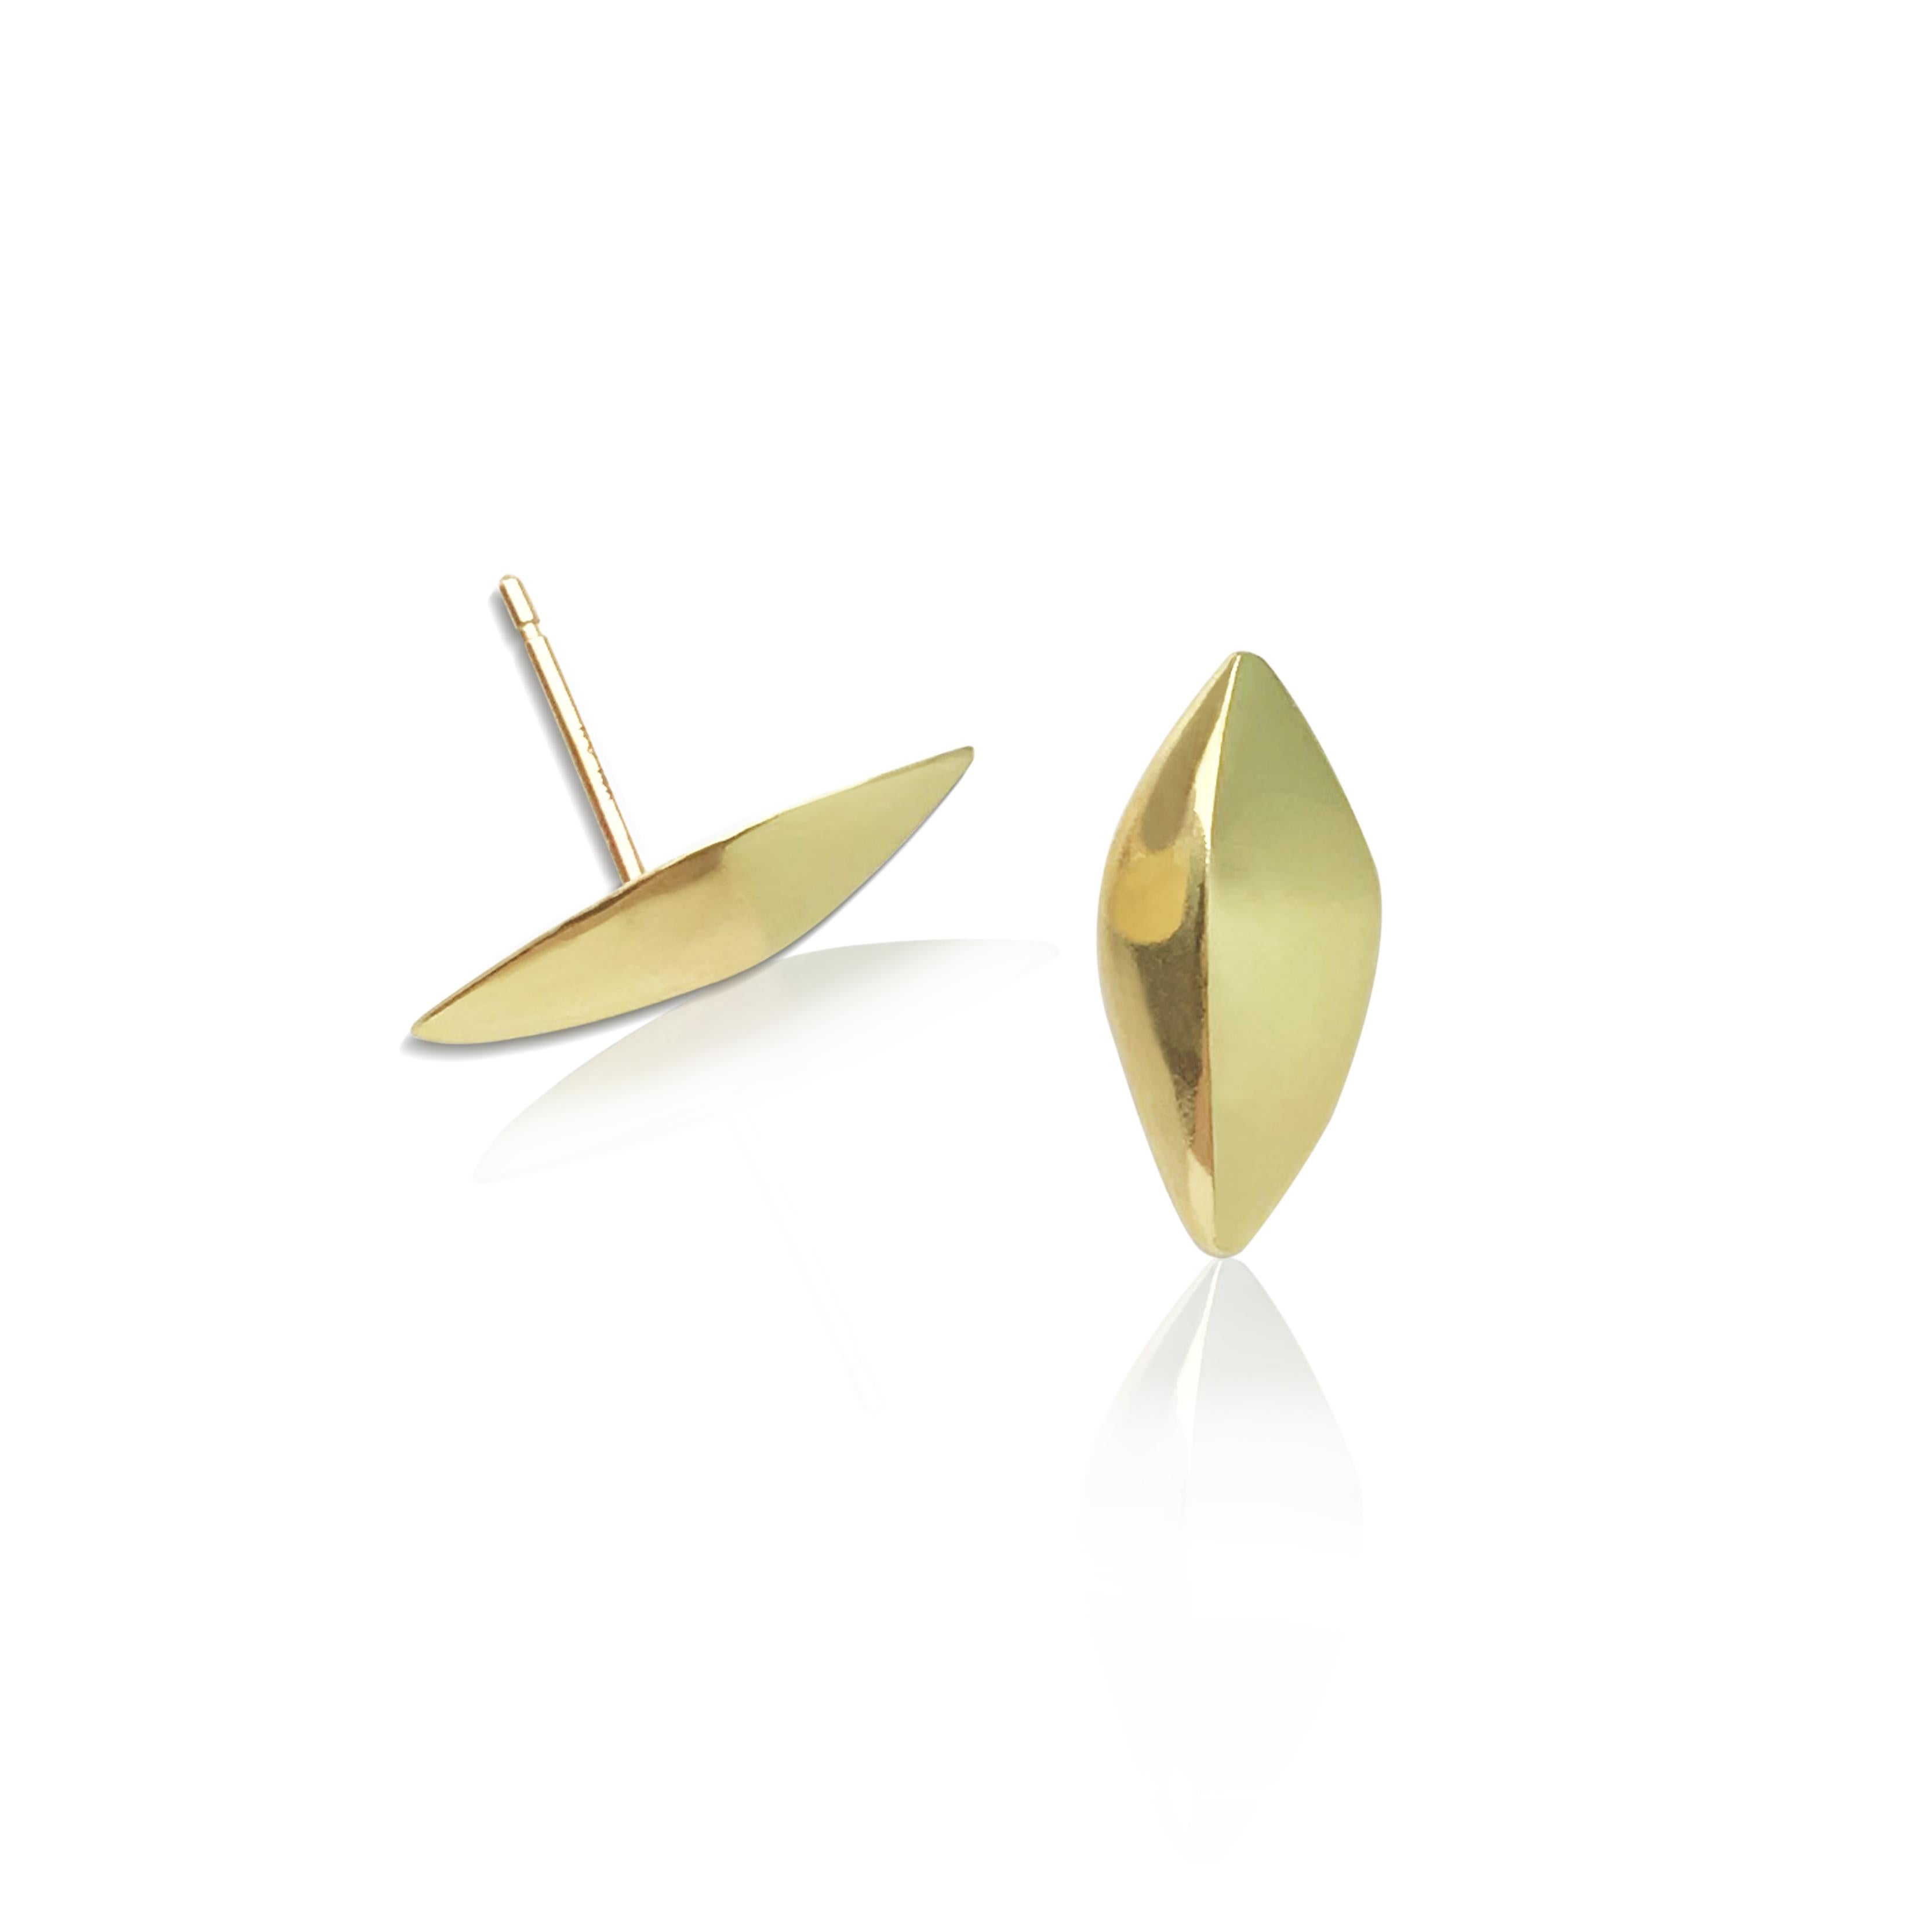 Unsere FAIRMINED Gold Flora Leaf Post Earrings aus unserer Modern Story Collection erinnern an die minimalistische Schlichtheit eines Blattes, das leicht am Ohr sitzt. Sie sind leicht zu tragen und klein, so dass sie als einzelner Ohrring oder als